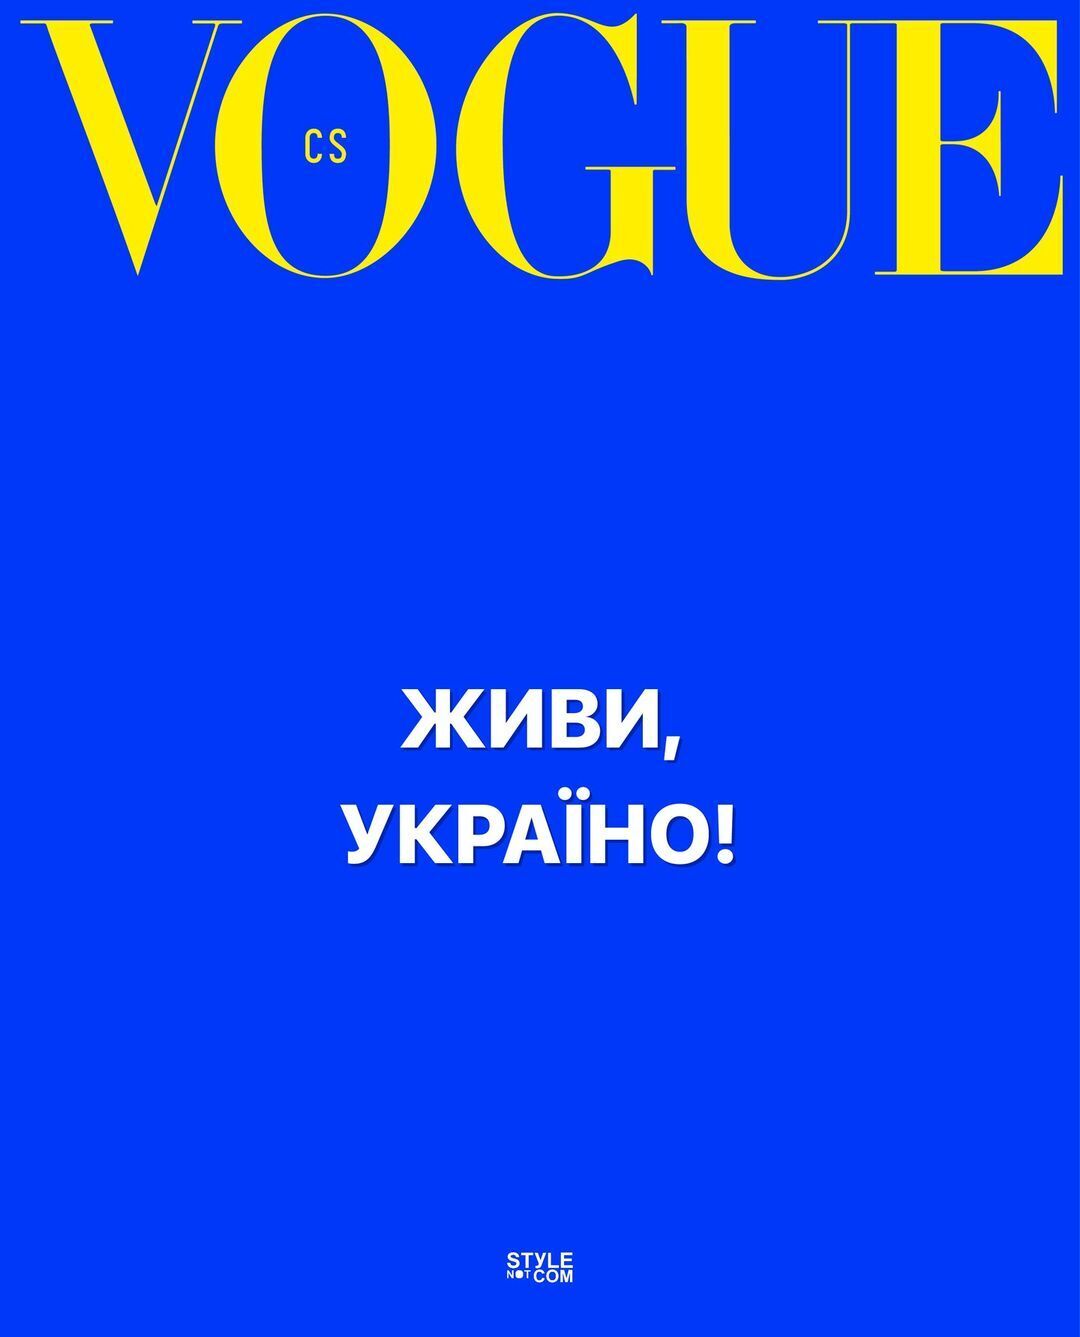 Vogue Czechoslovakia висловив солідарність українському народові